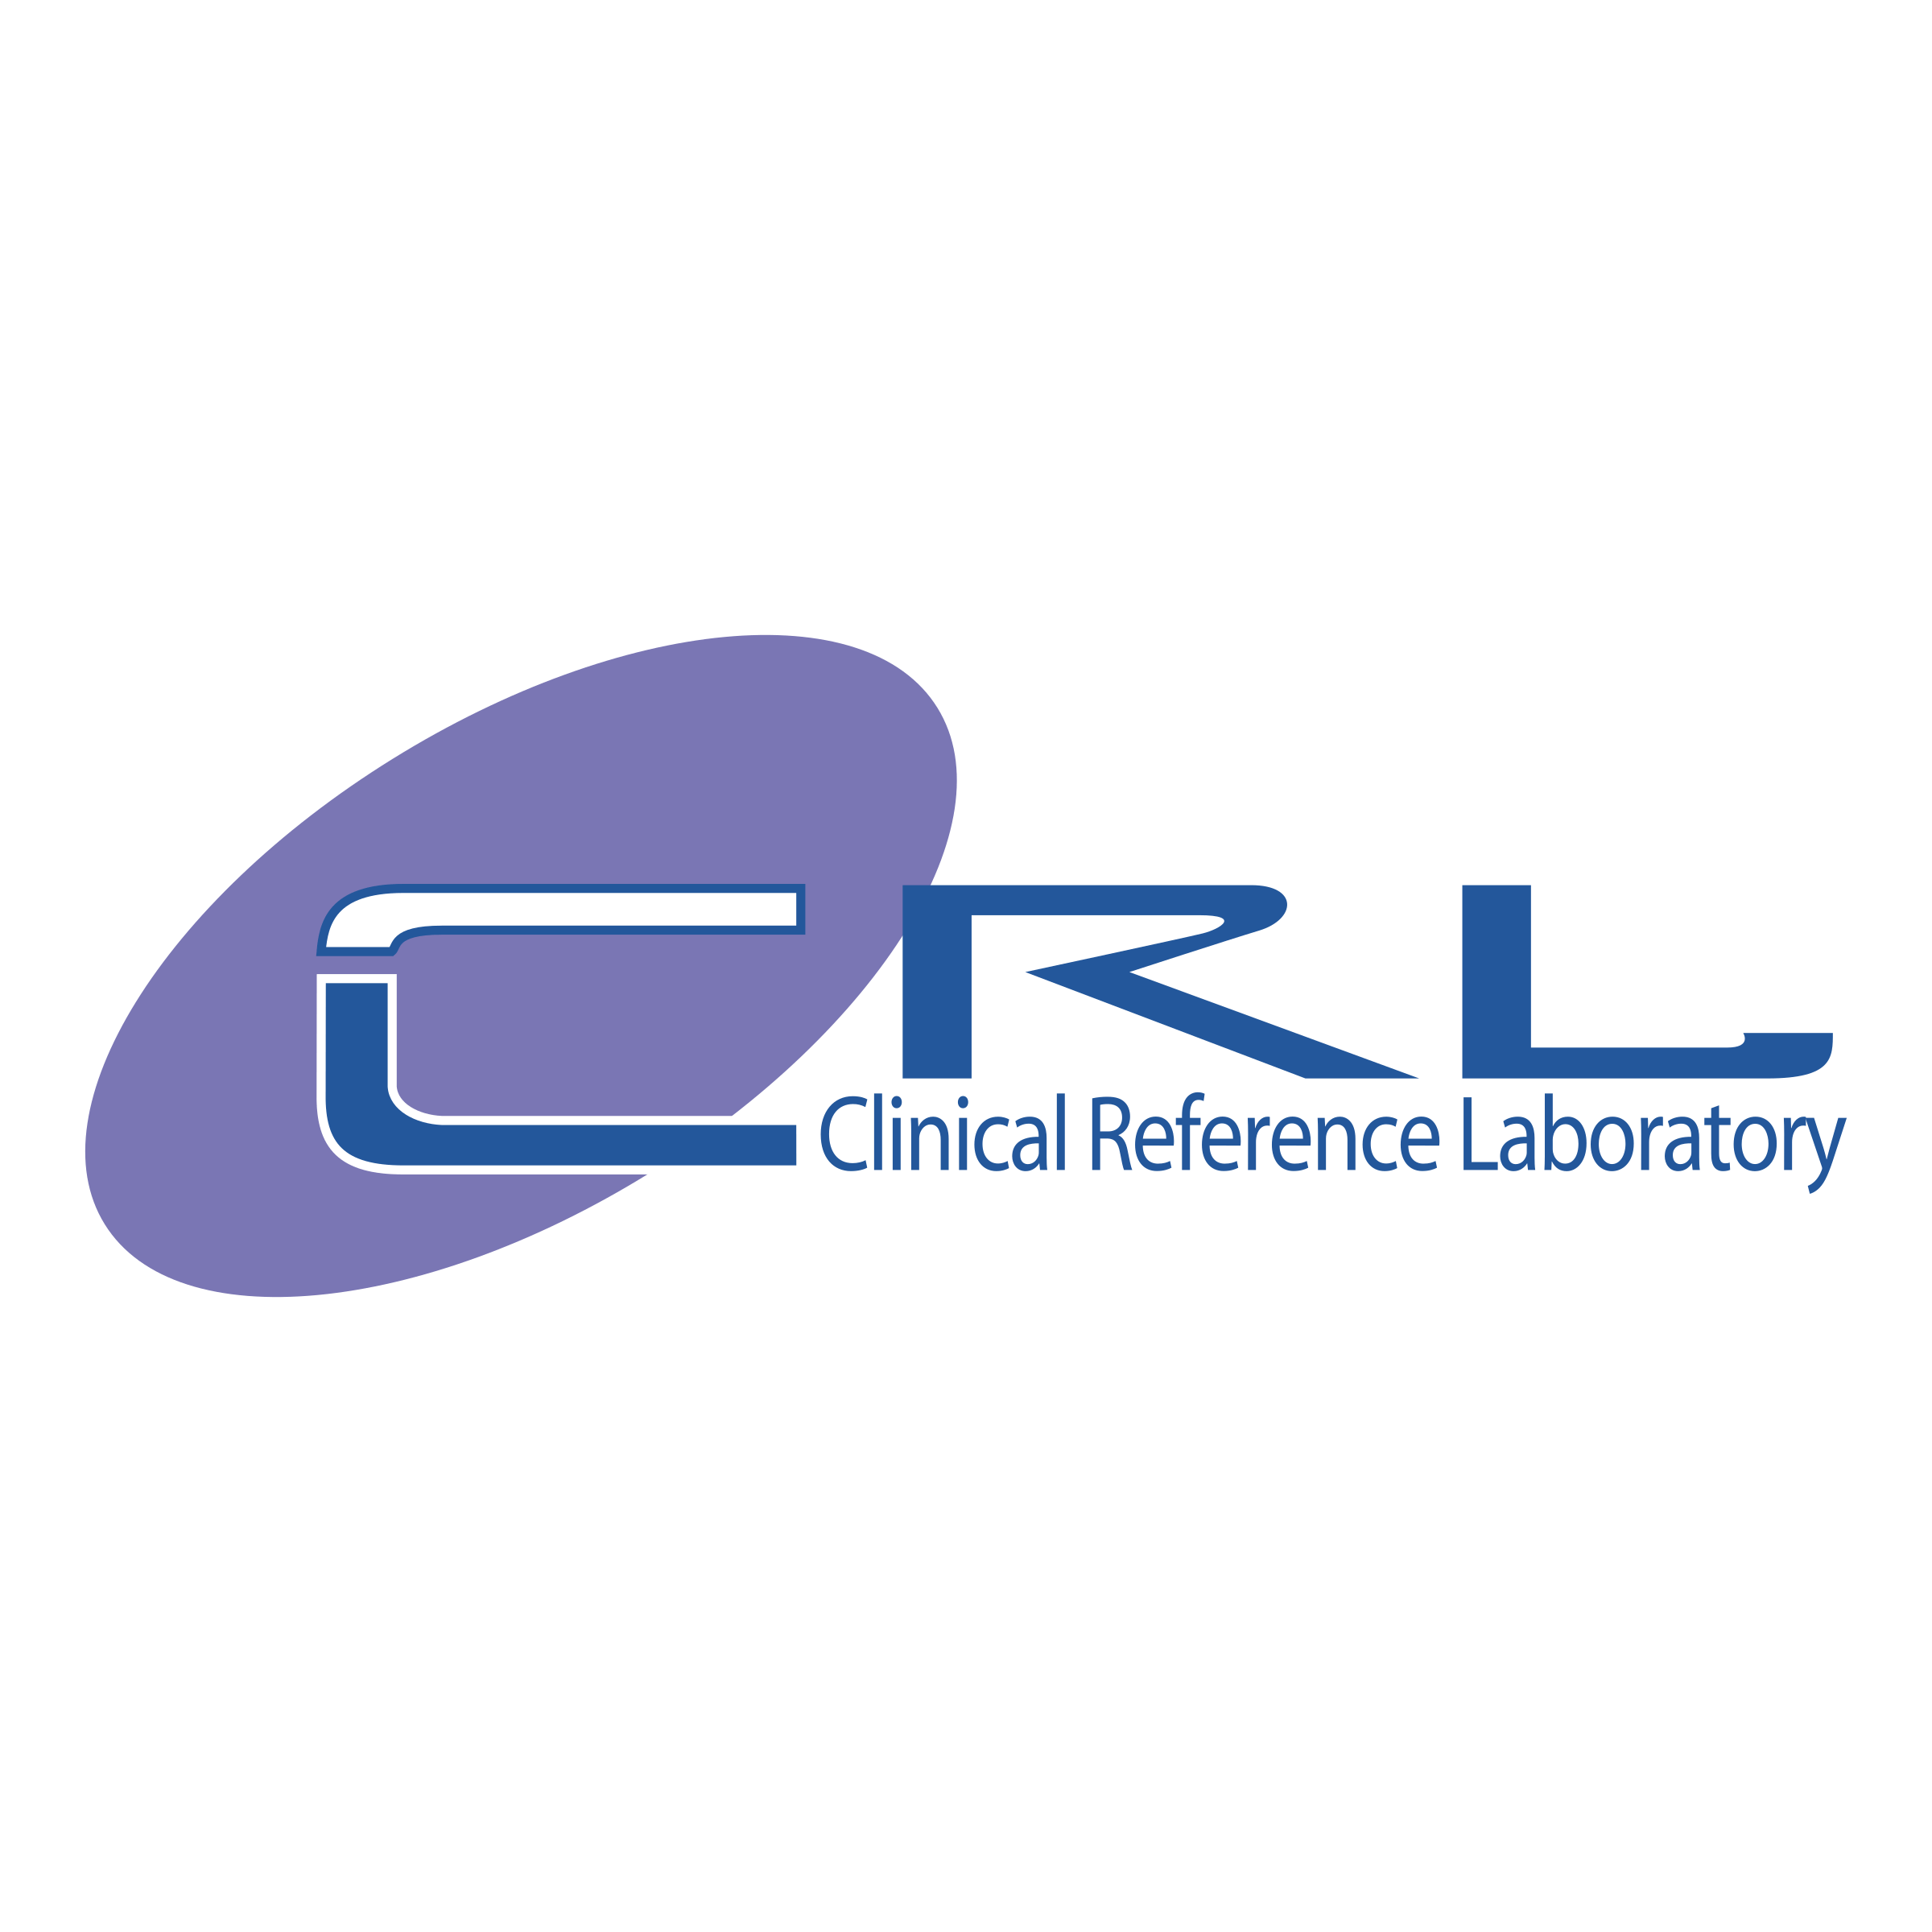 CRL Logo - CRL Logo PNG Transparent & SVG Vector - Freebie Supply